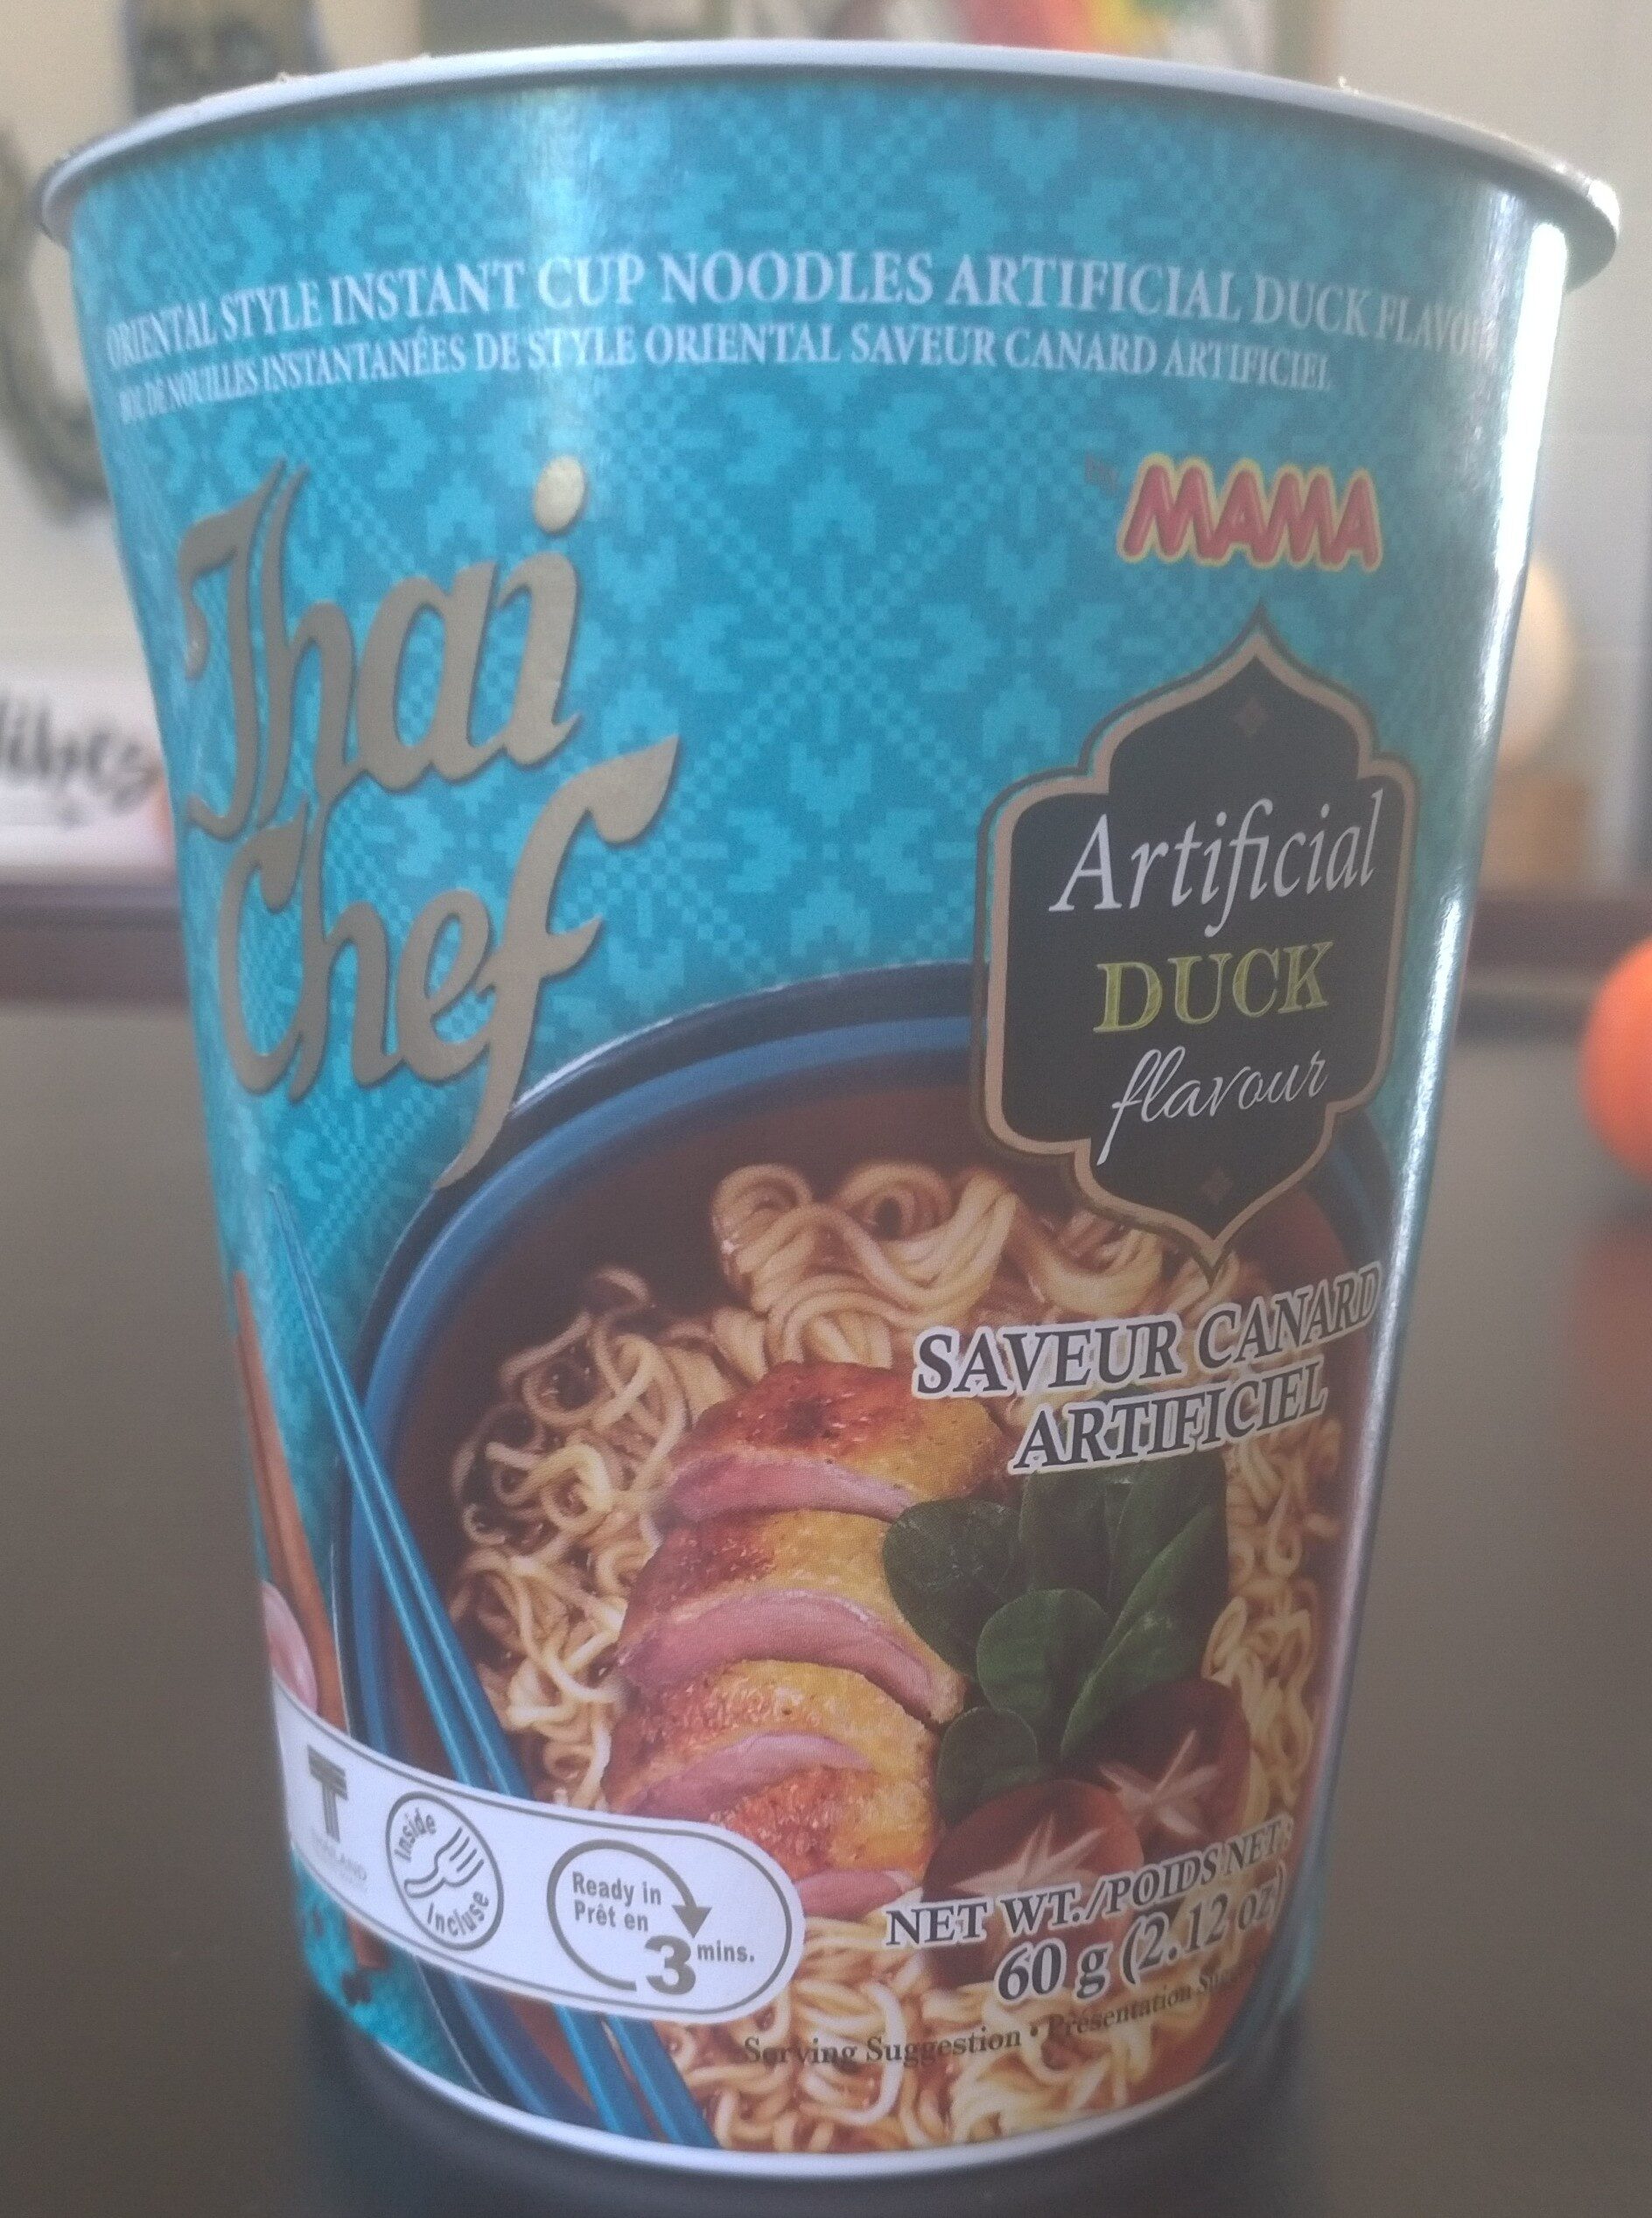 Artificial Duck Flavour Instant Oriental Style Cup Noodles - Produit - en